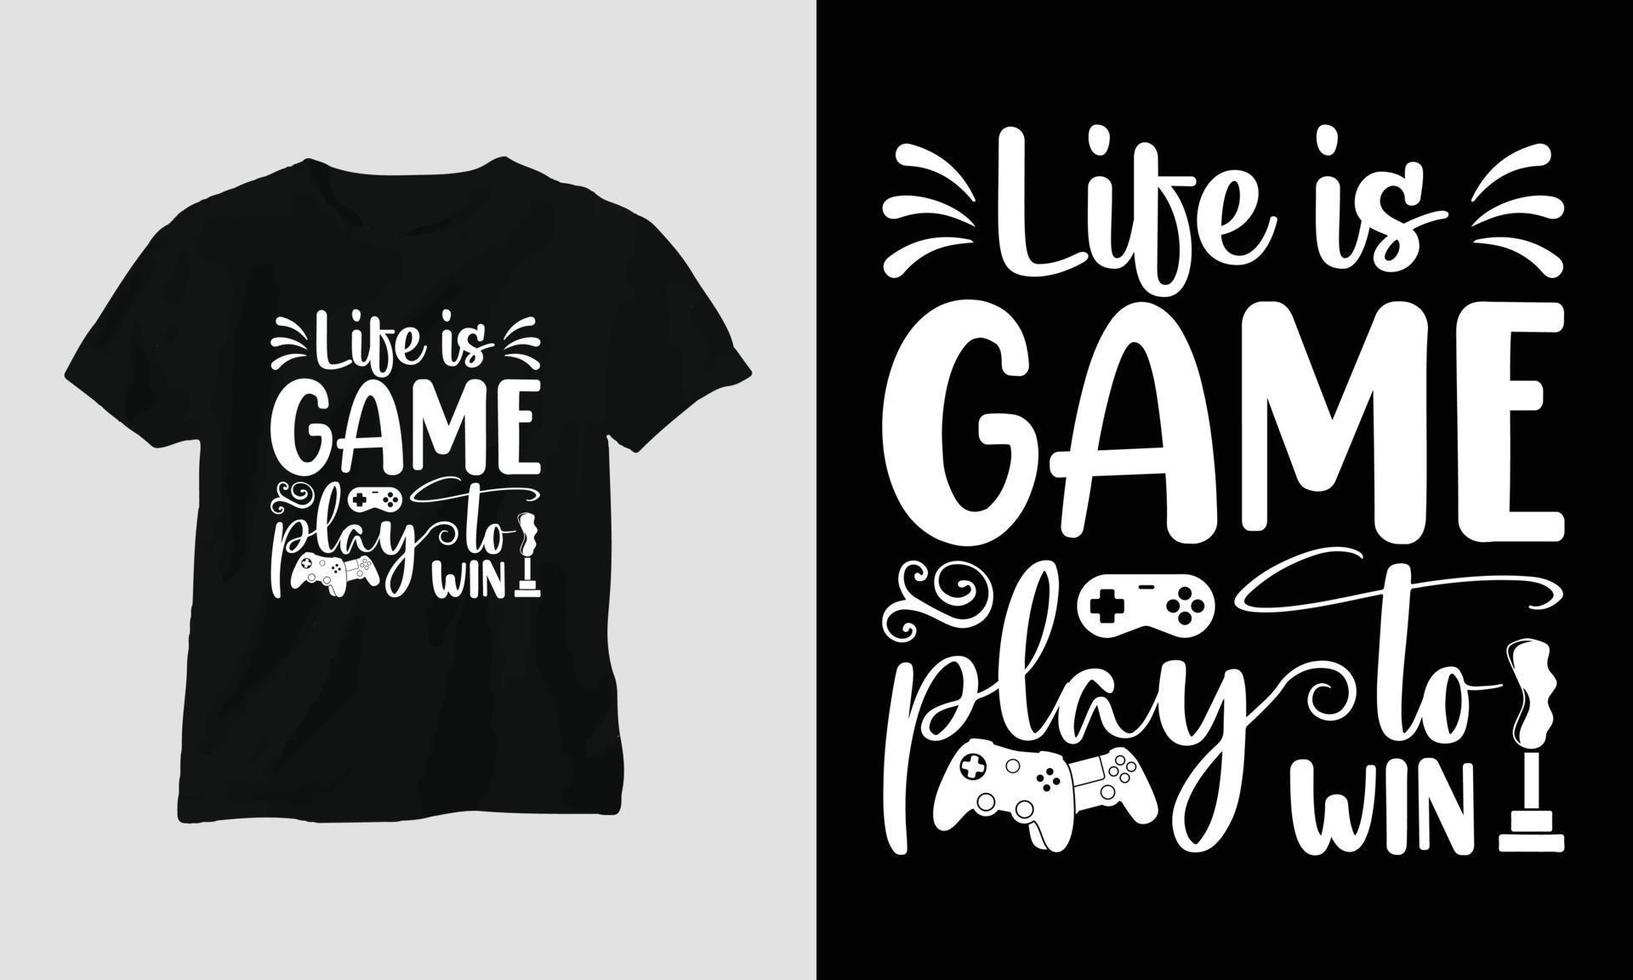 liv är en spel spela till vinna - gamer citat t-shirt och kläder typografi design vektor